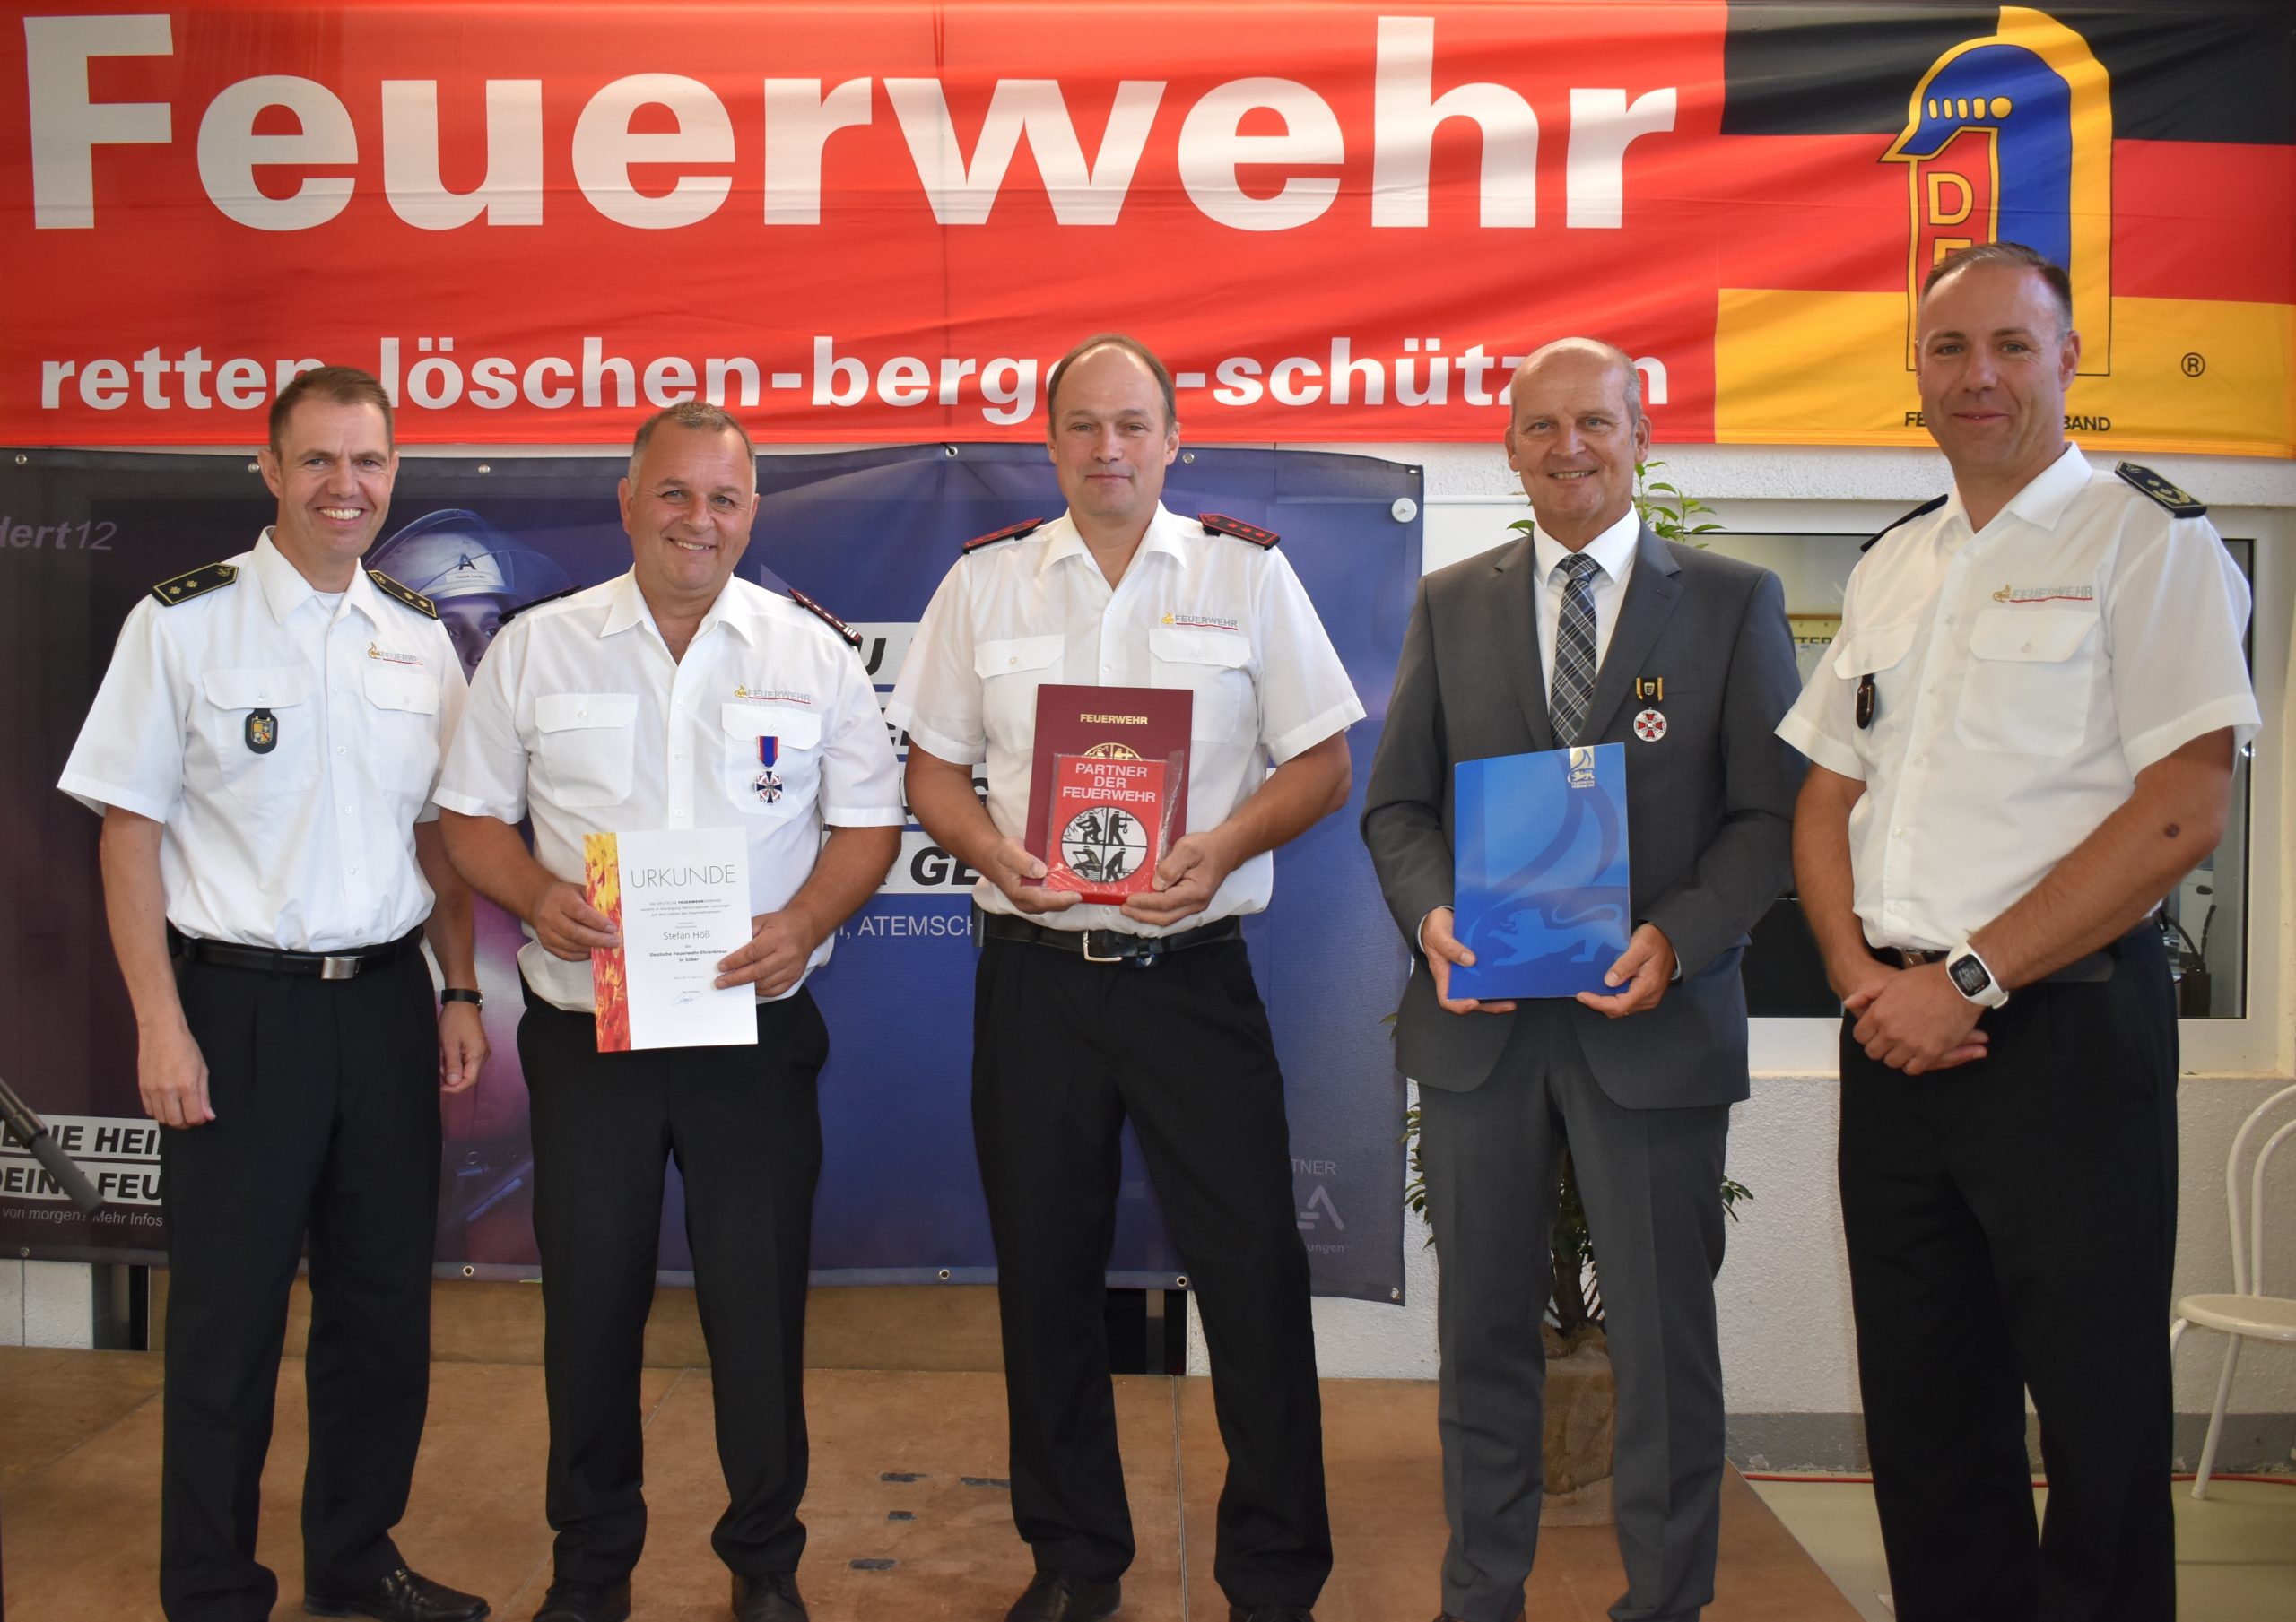 100 Jahre Feuerwehr Abteilung Ottersweier – Festtag